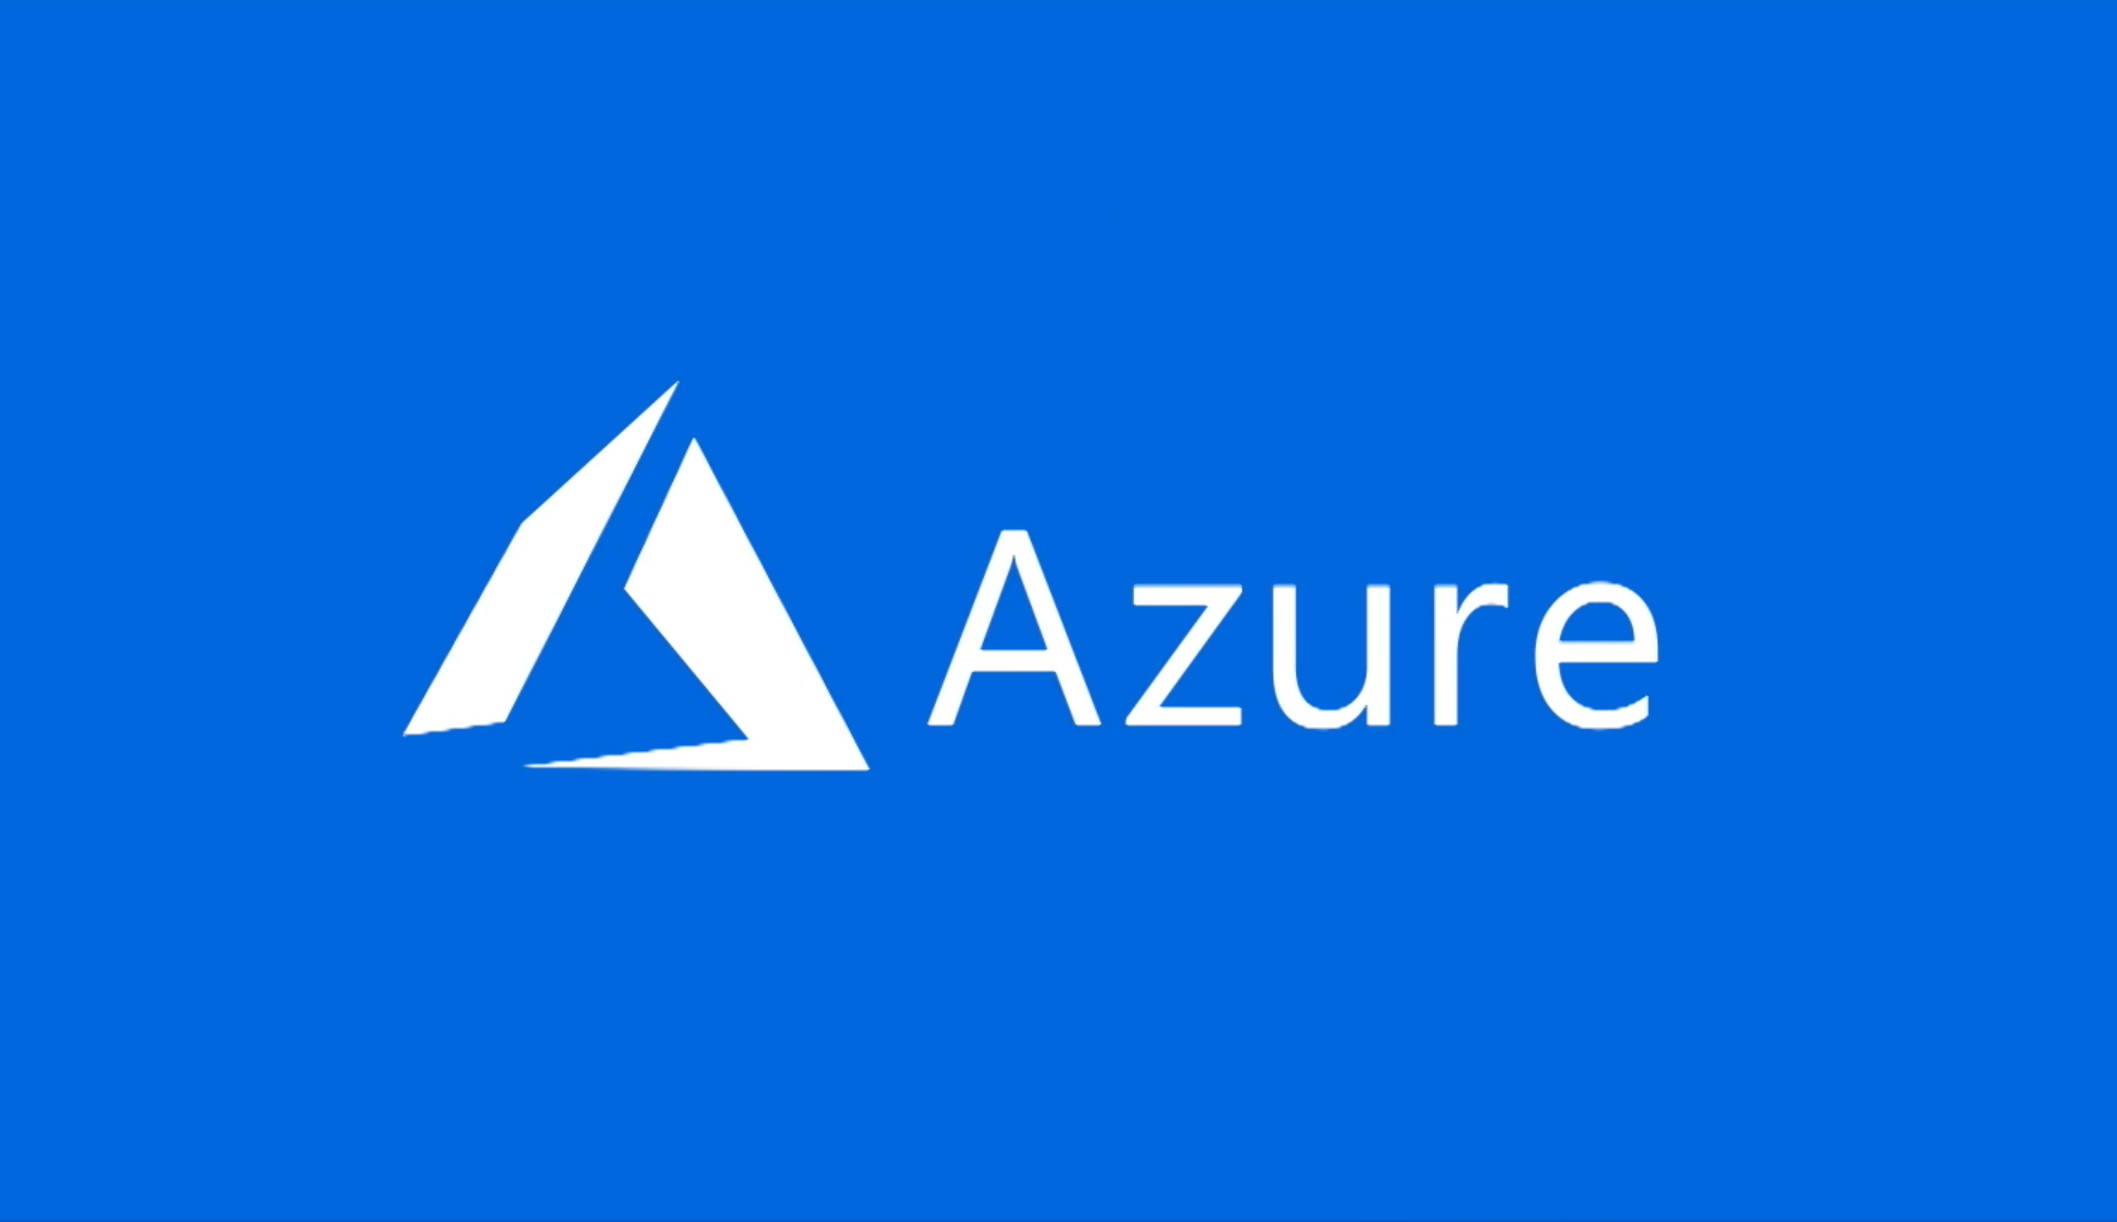 Microsoft Azure logo with blue background